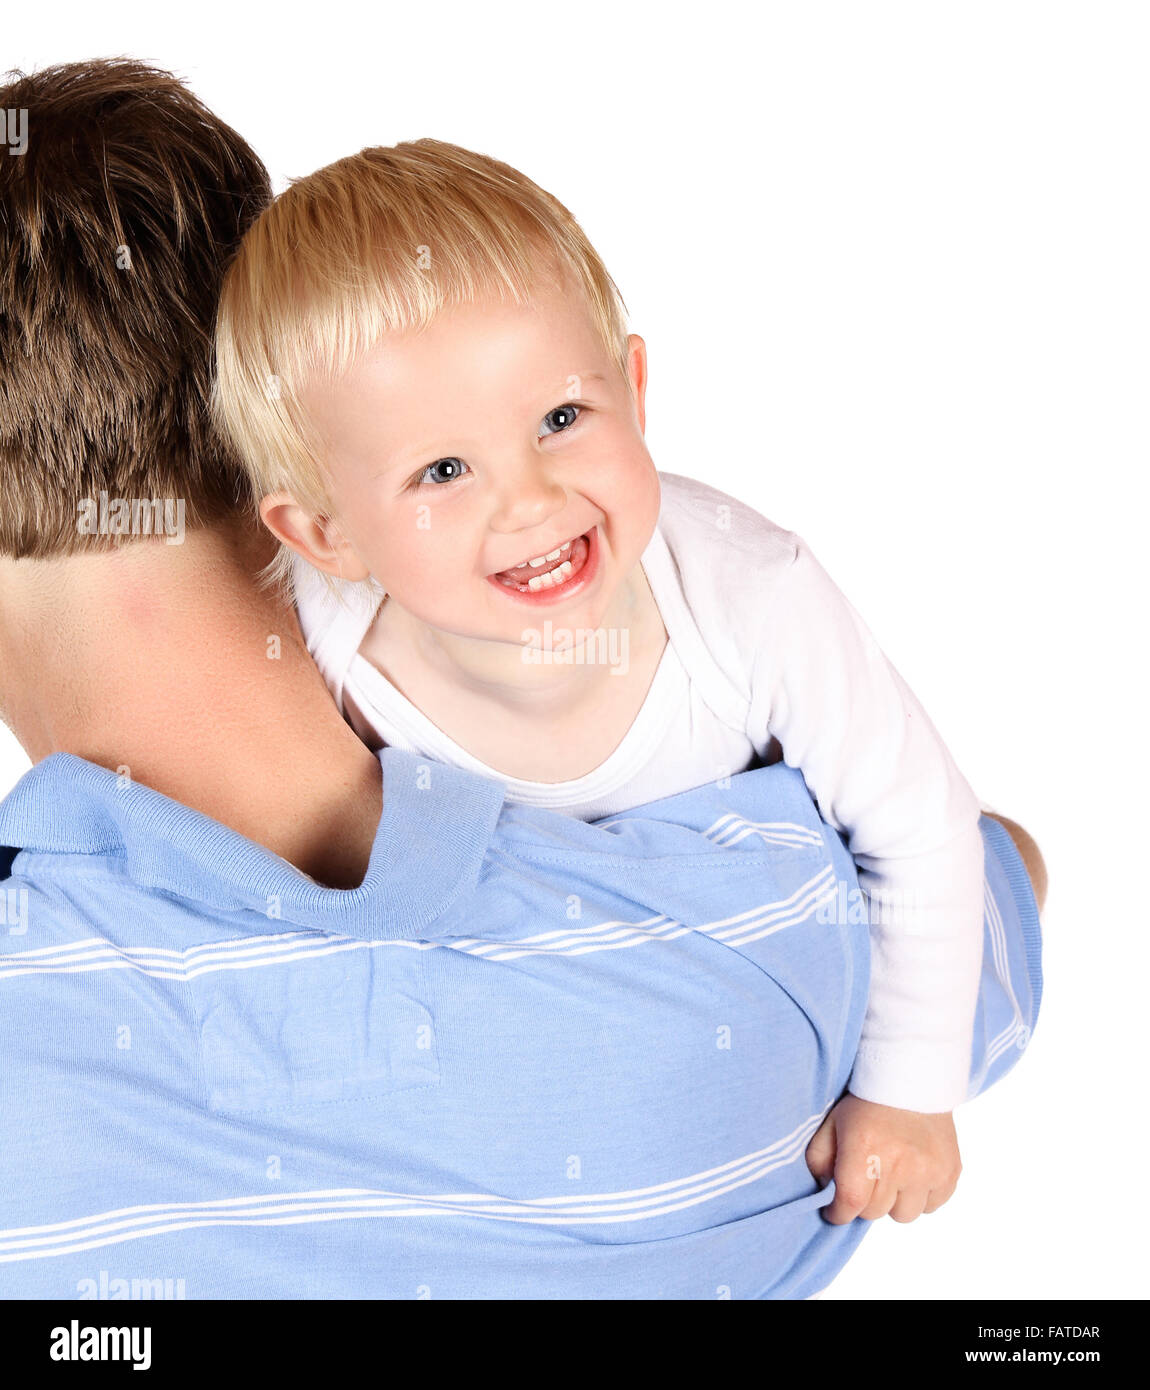 Felice papà caucasico tenendo la sua baby boy. Immagine è isolato su uno sfondo bianco. Foto Stock